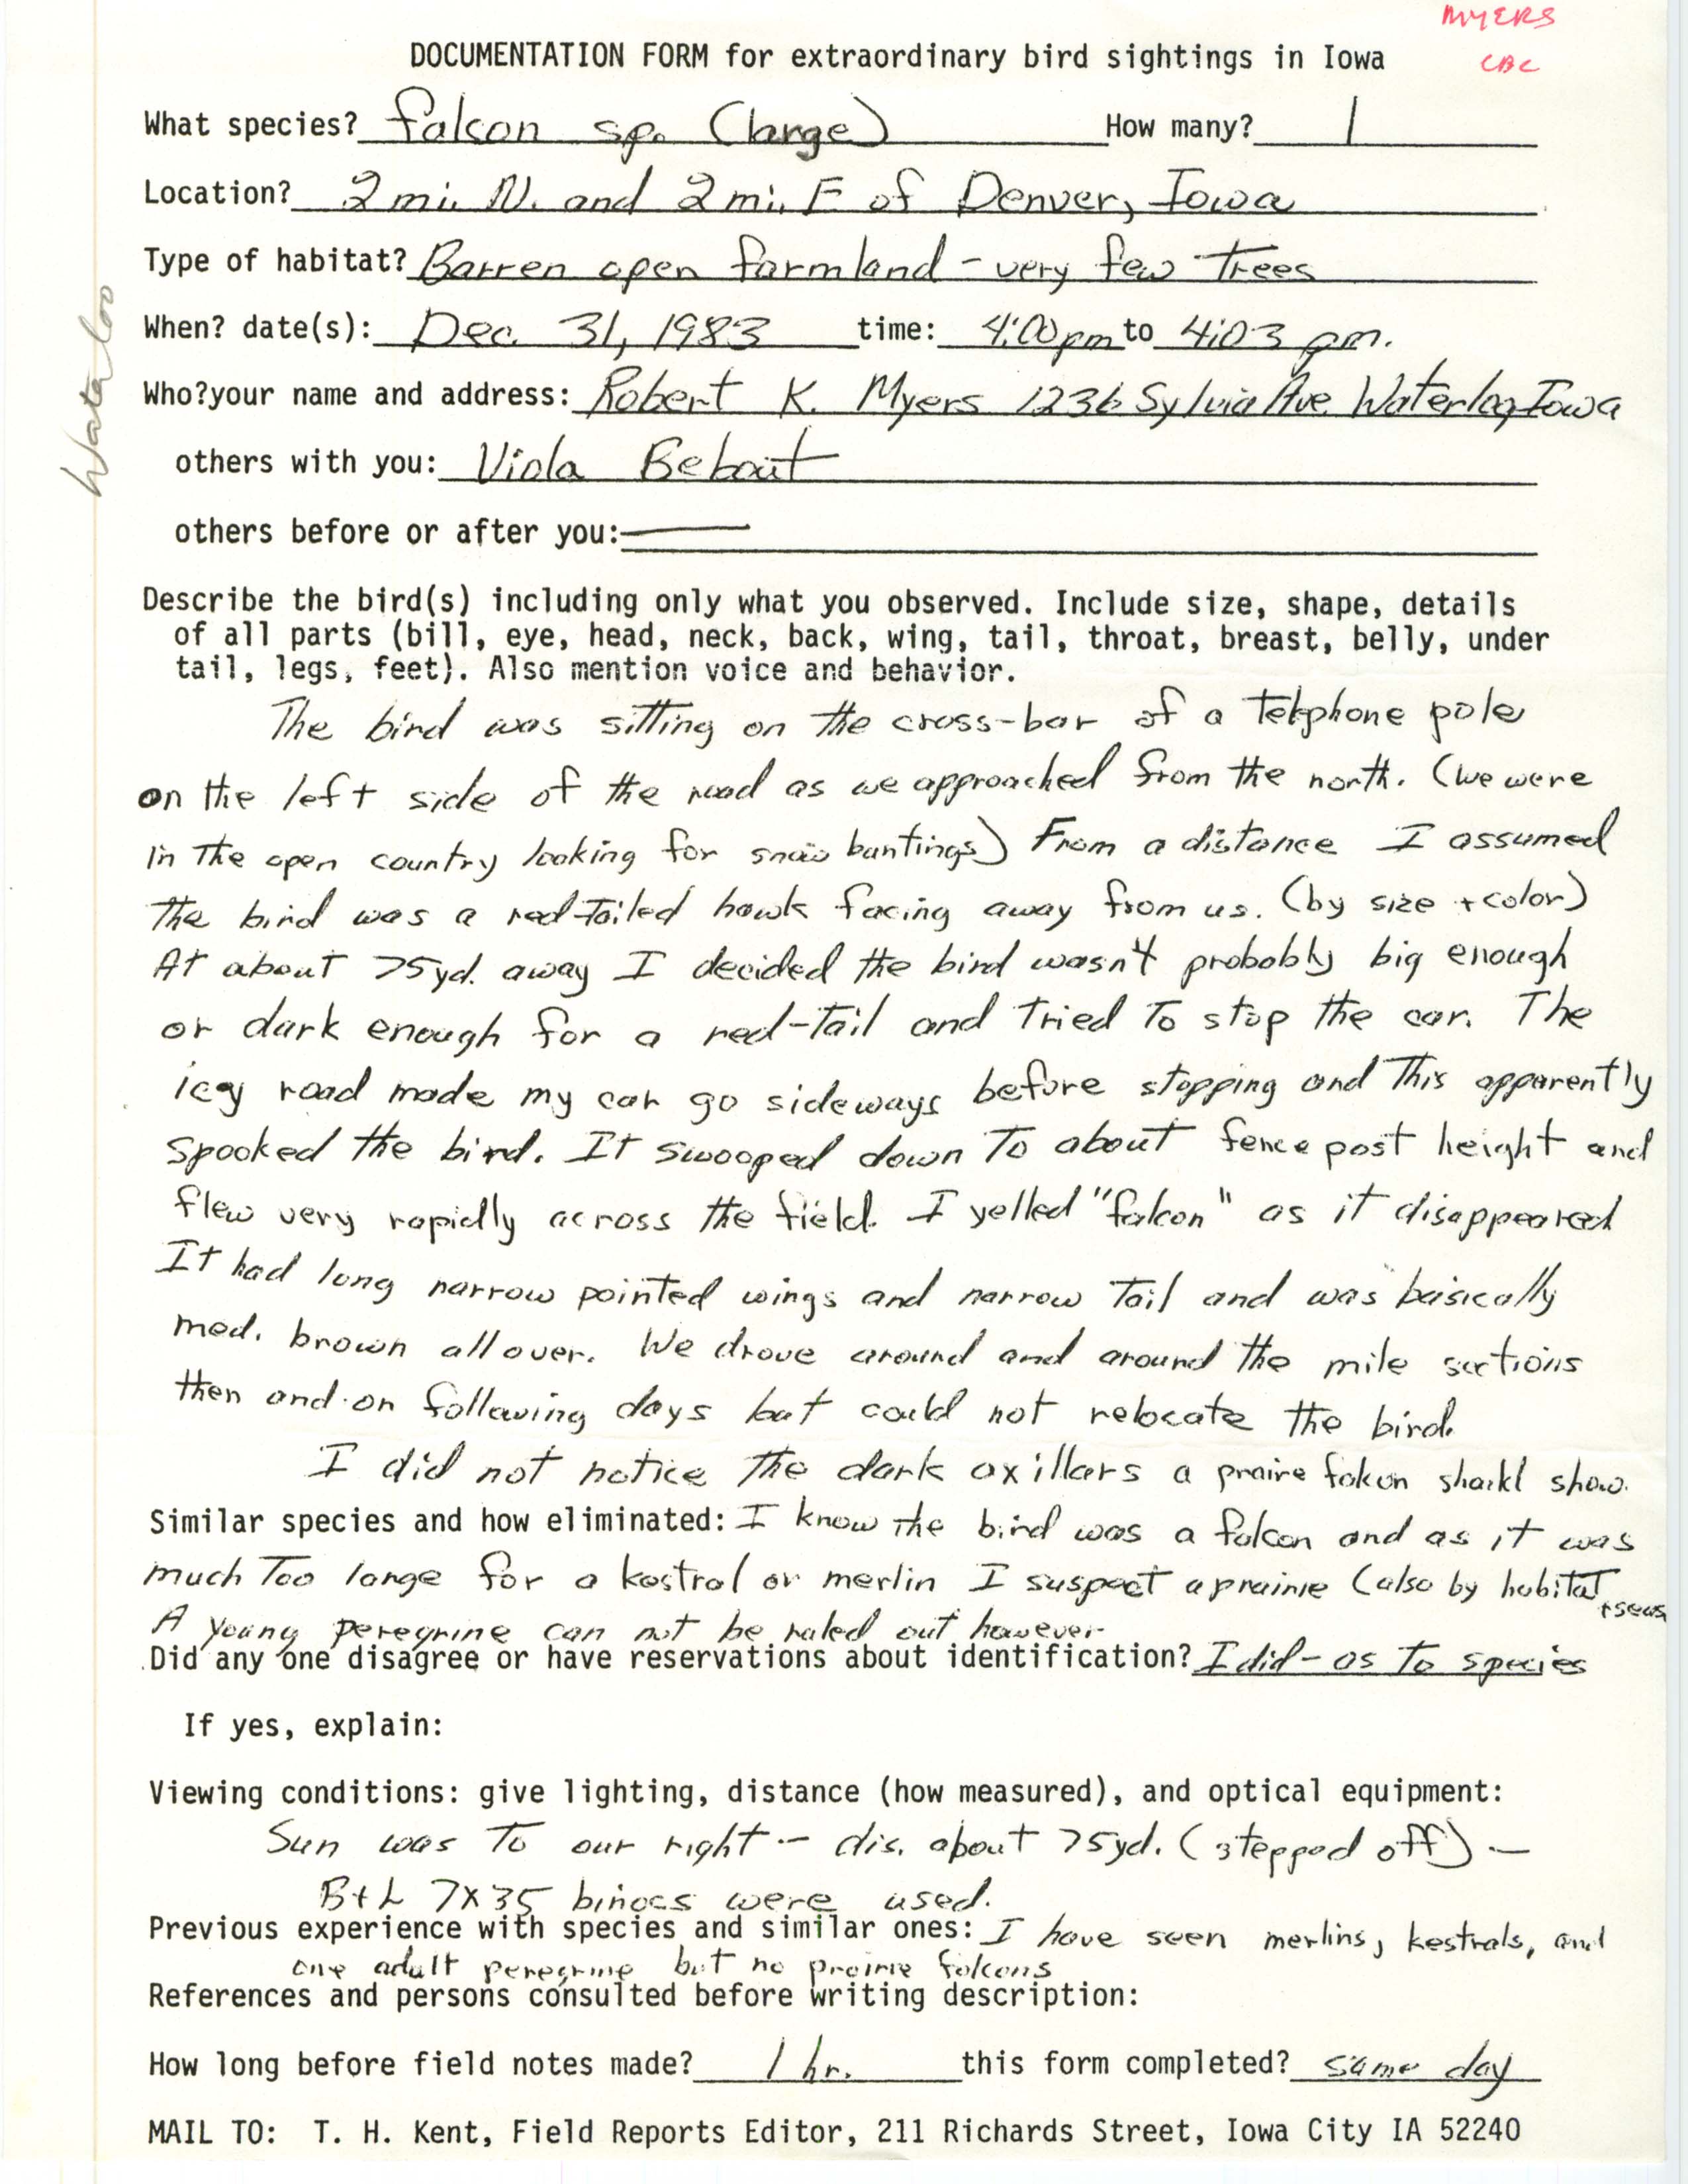 Rare bird documentation form for Peregrine Falcon near Denver, 1983